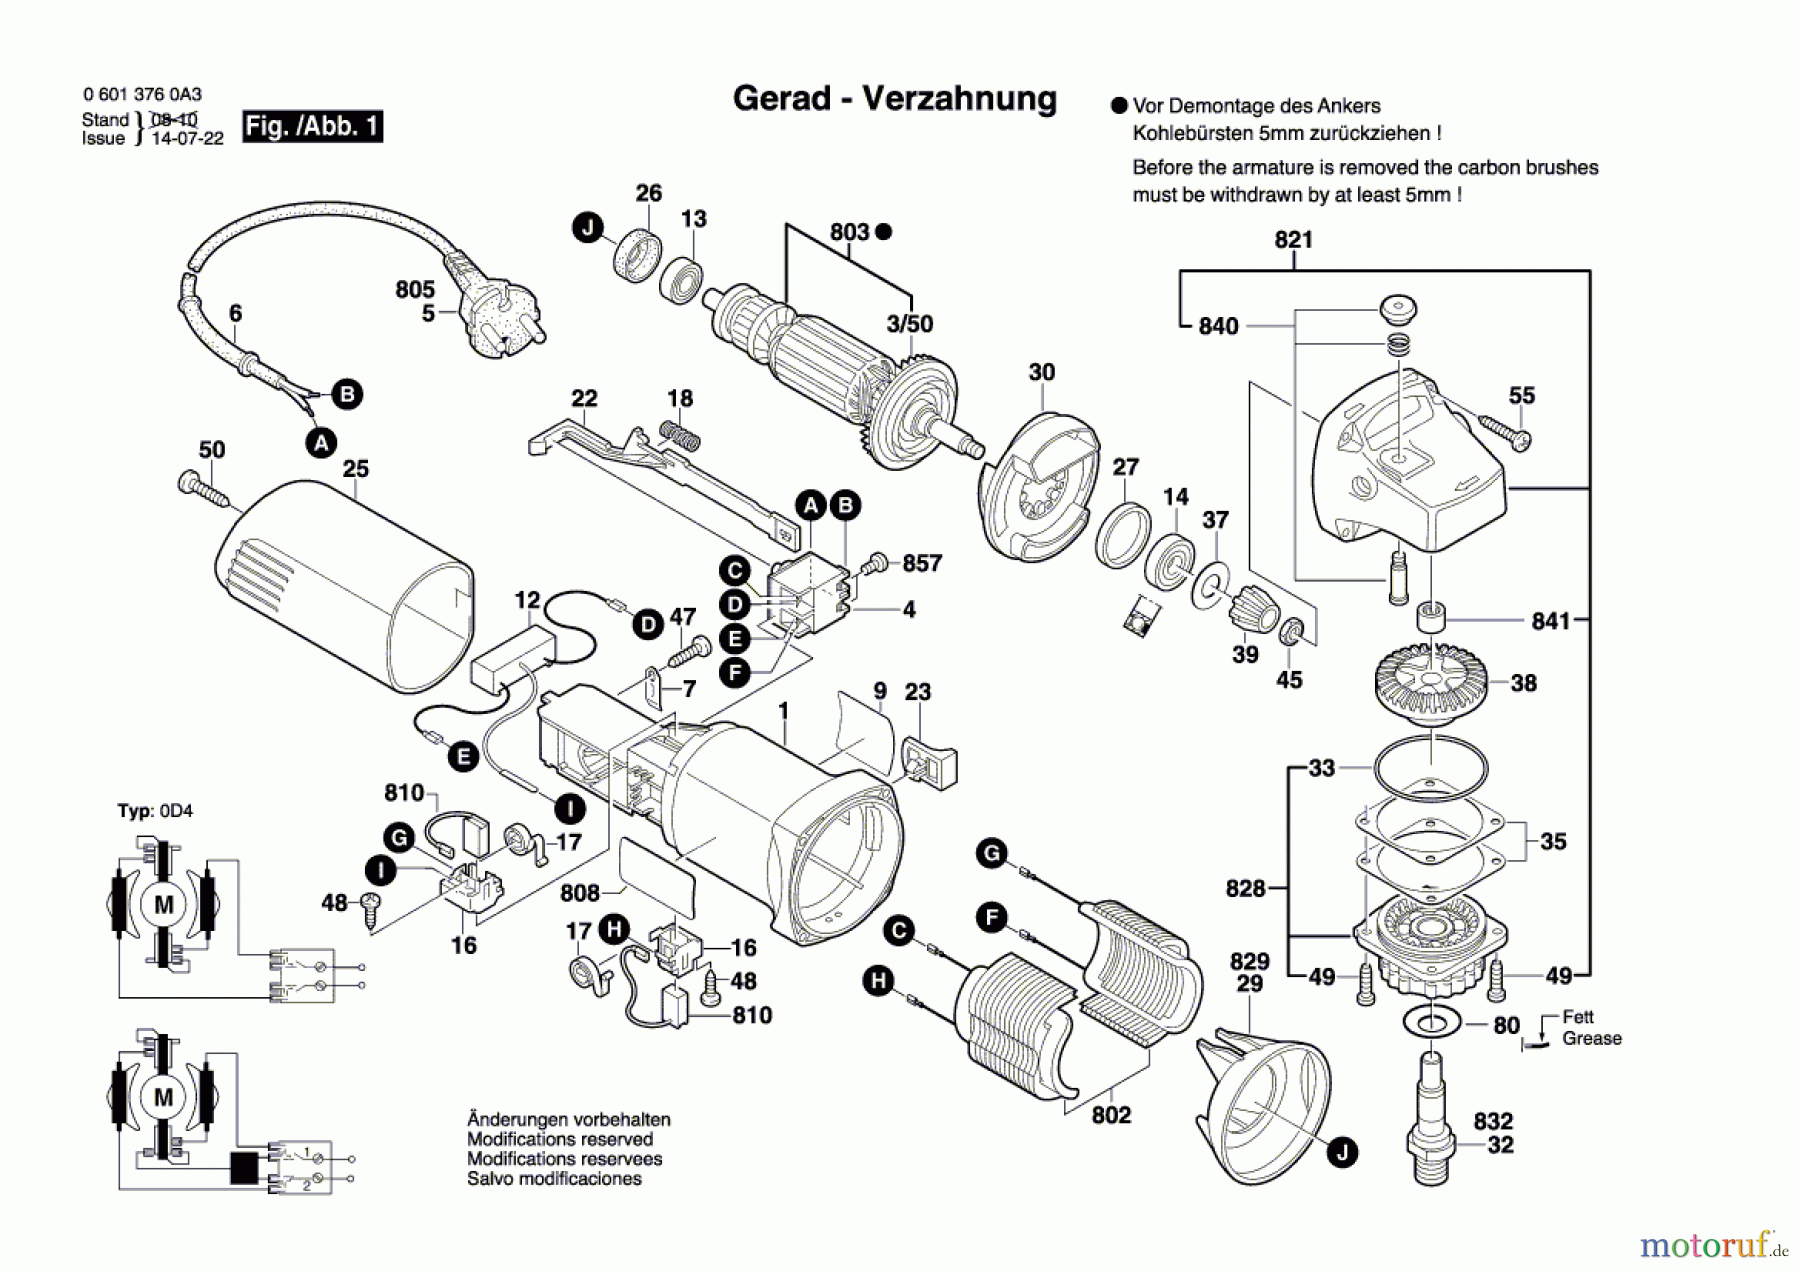  Bosch Werkzeug Winkelschleifer GWS 580 Seite 1